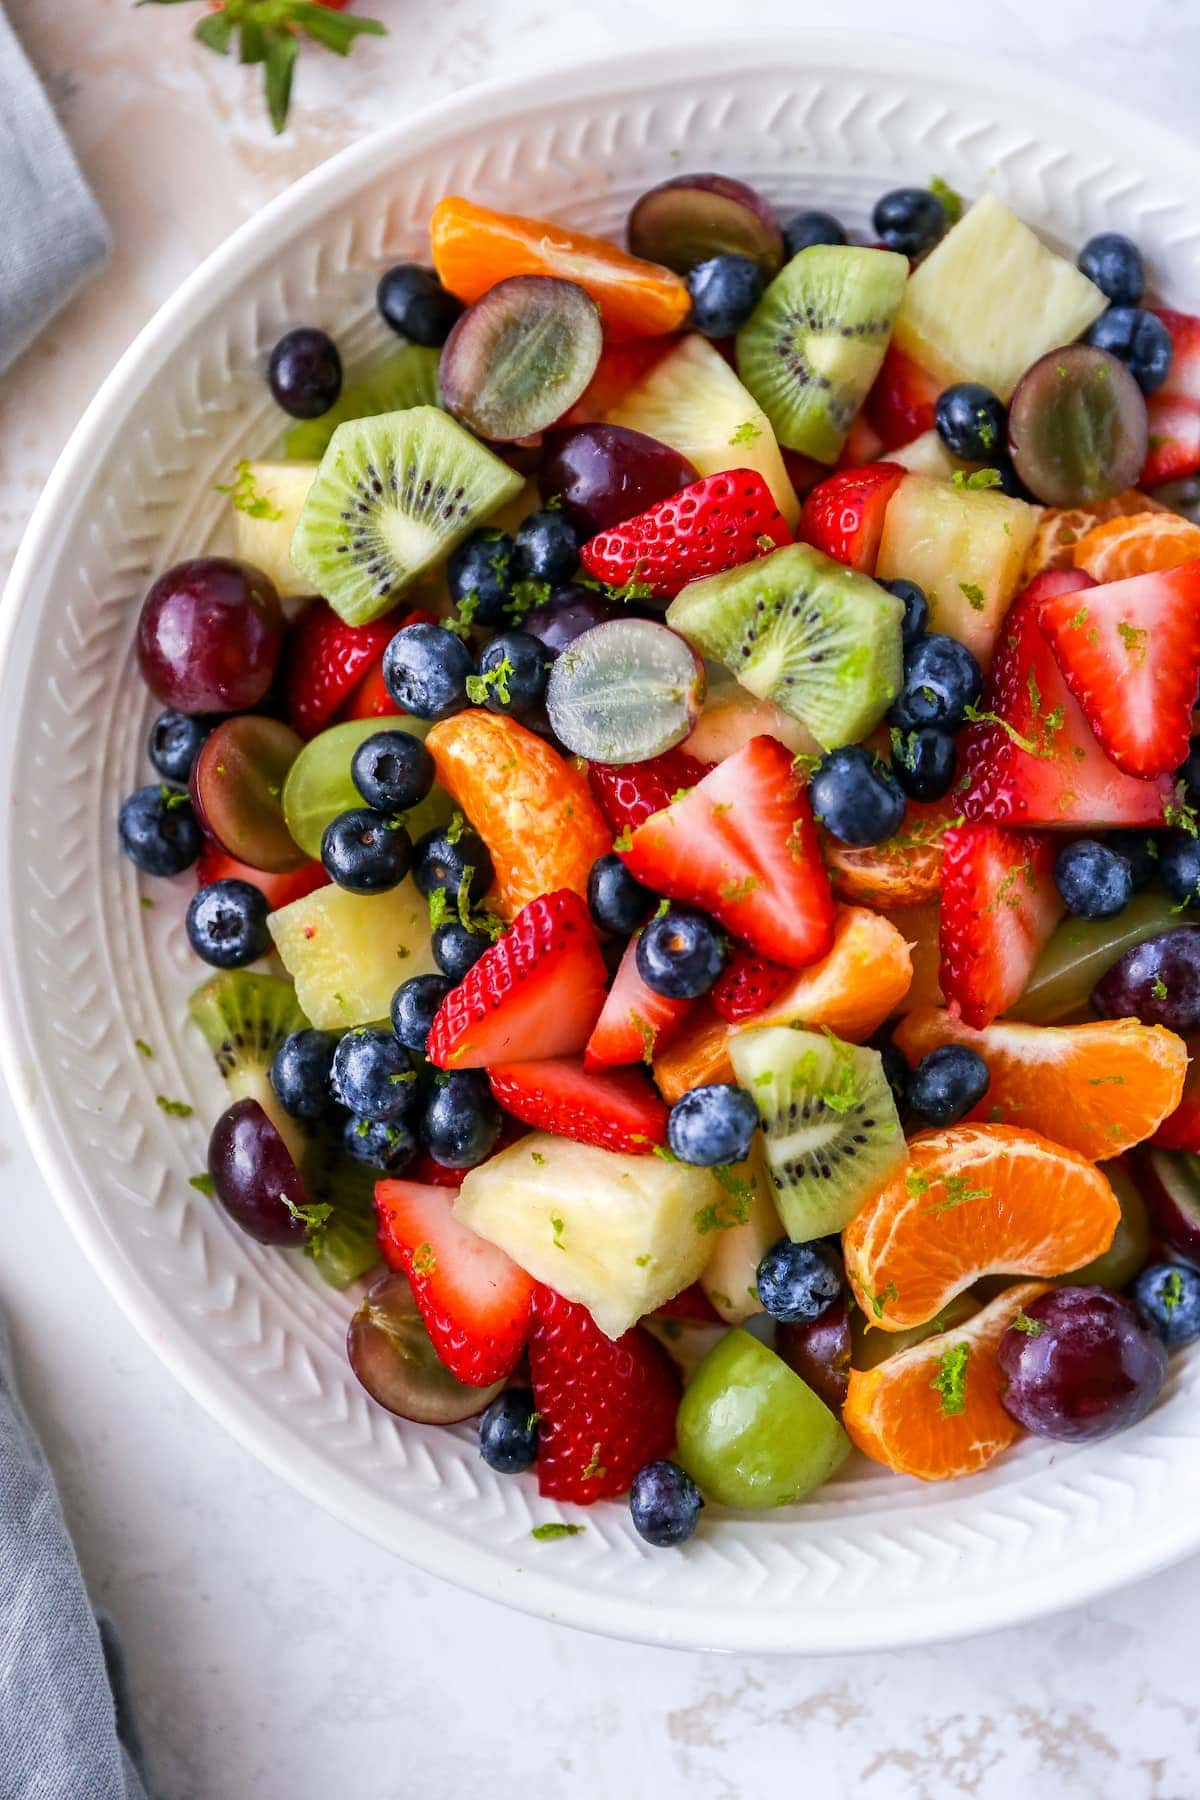 Tigela de salada de frutas com morangos, clementinas, kiwi, uvas, mirtilos e abacaxi. A salada de frutas é coberta com raspas de lima.